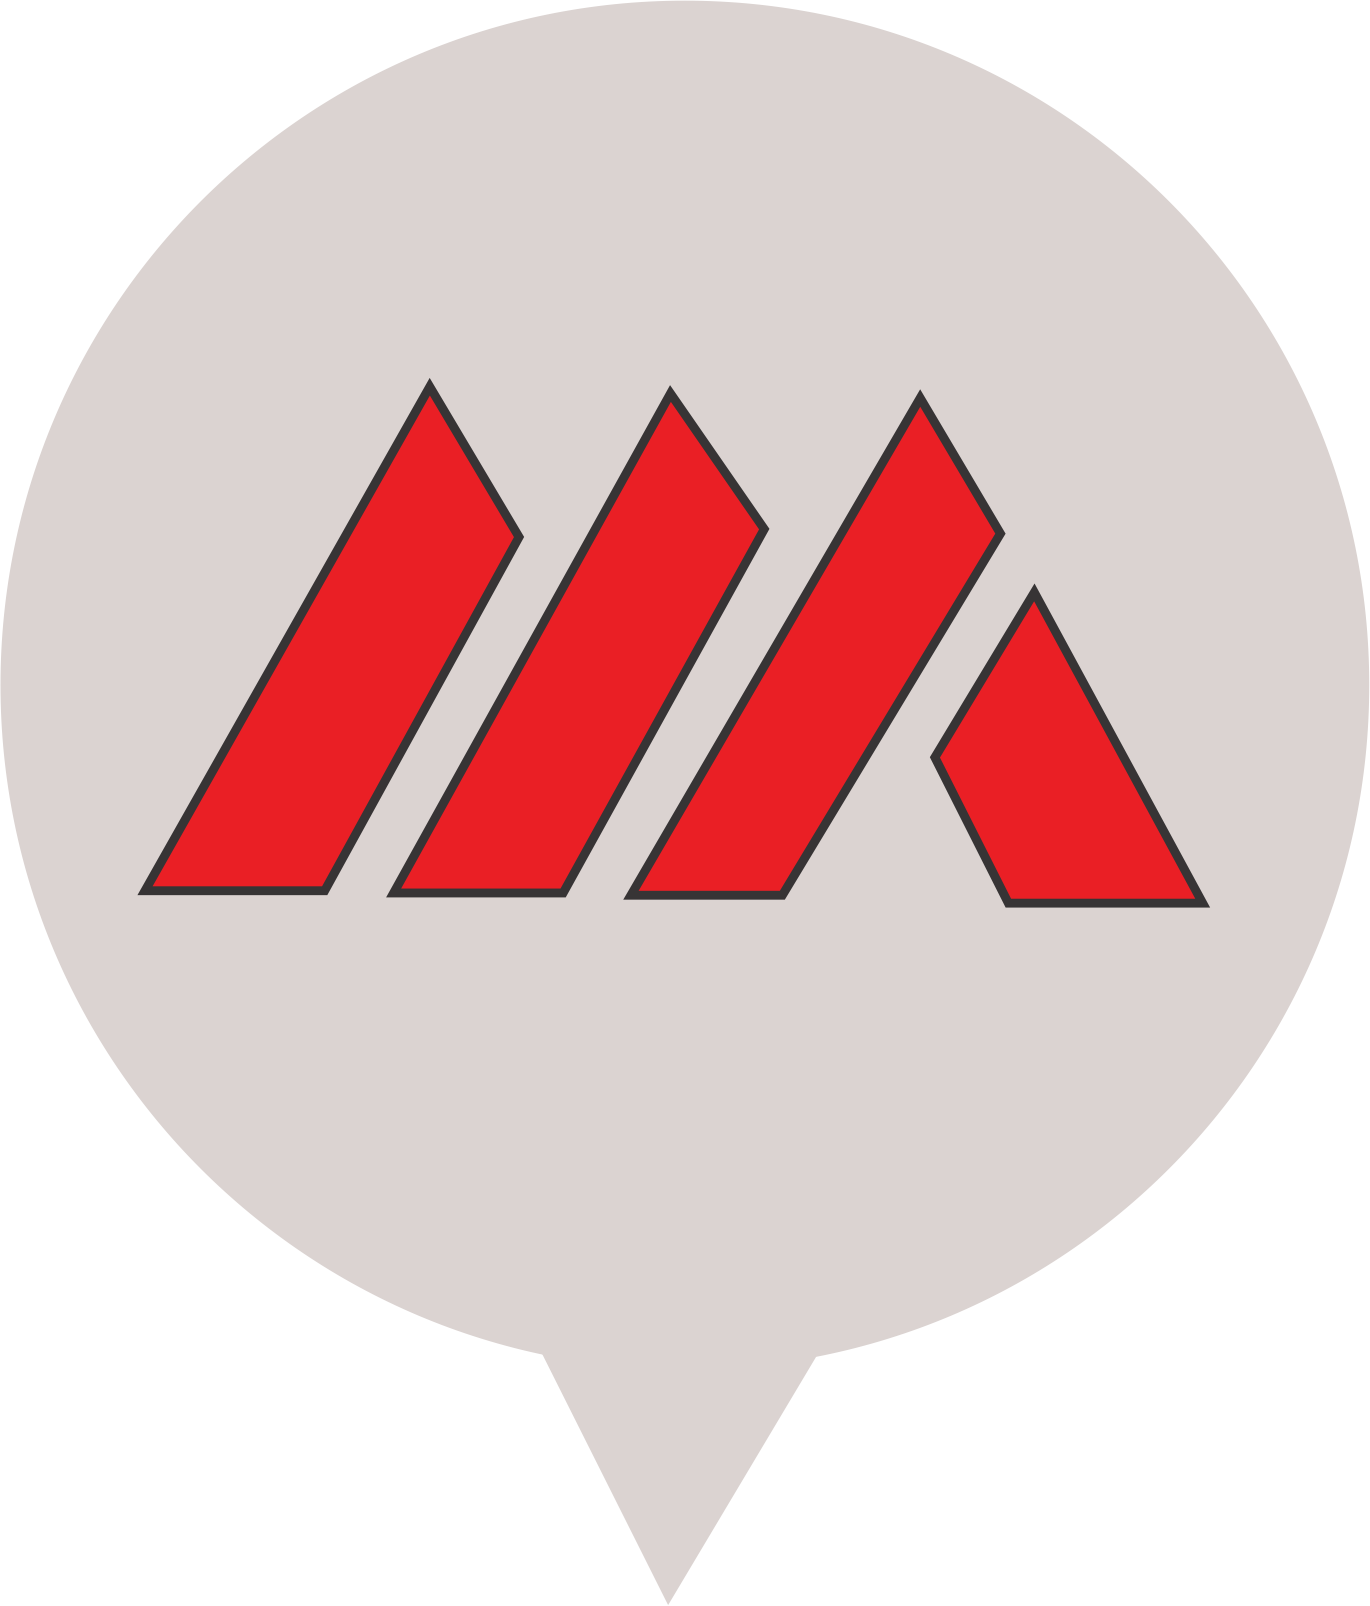 1976-1985